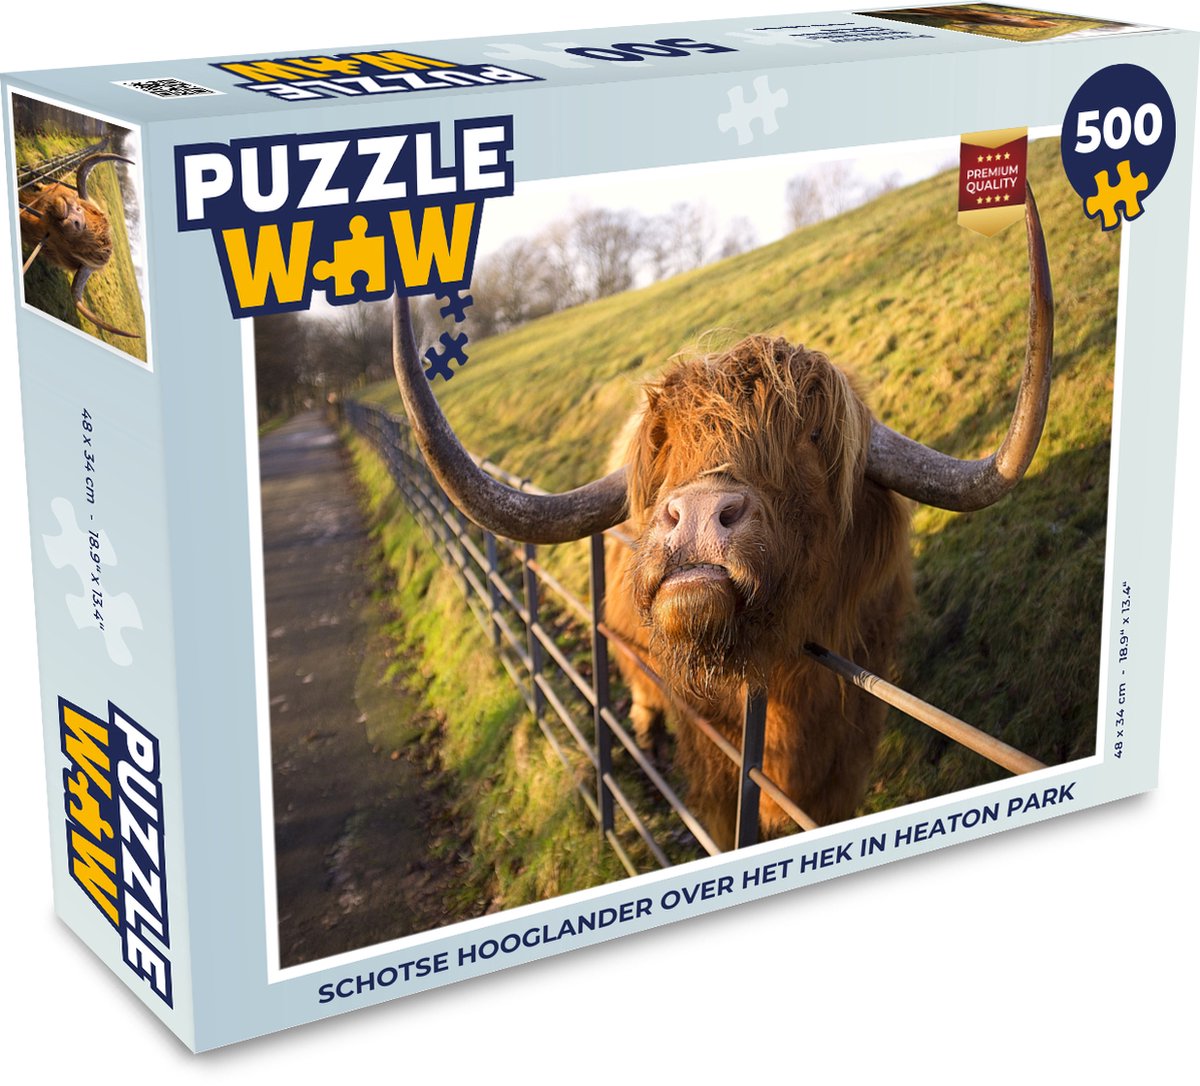 Afbeelding van product Puzzel 500 stukjes Schotse Hooglanders - Schotse hooglander over het hek in Heaton Park - PuzzleWow heeft +100000 puzzels